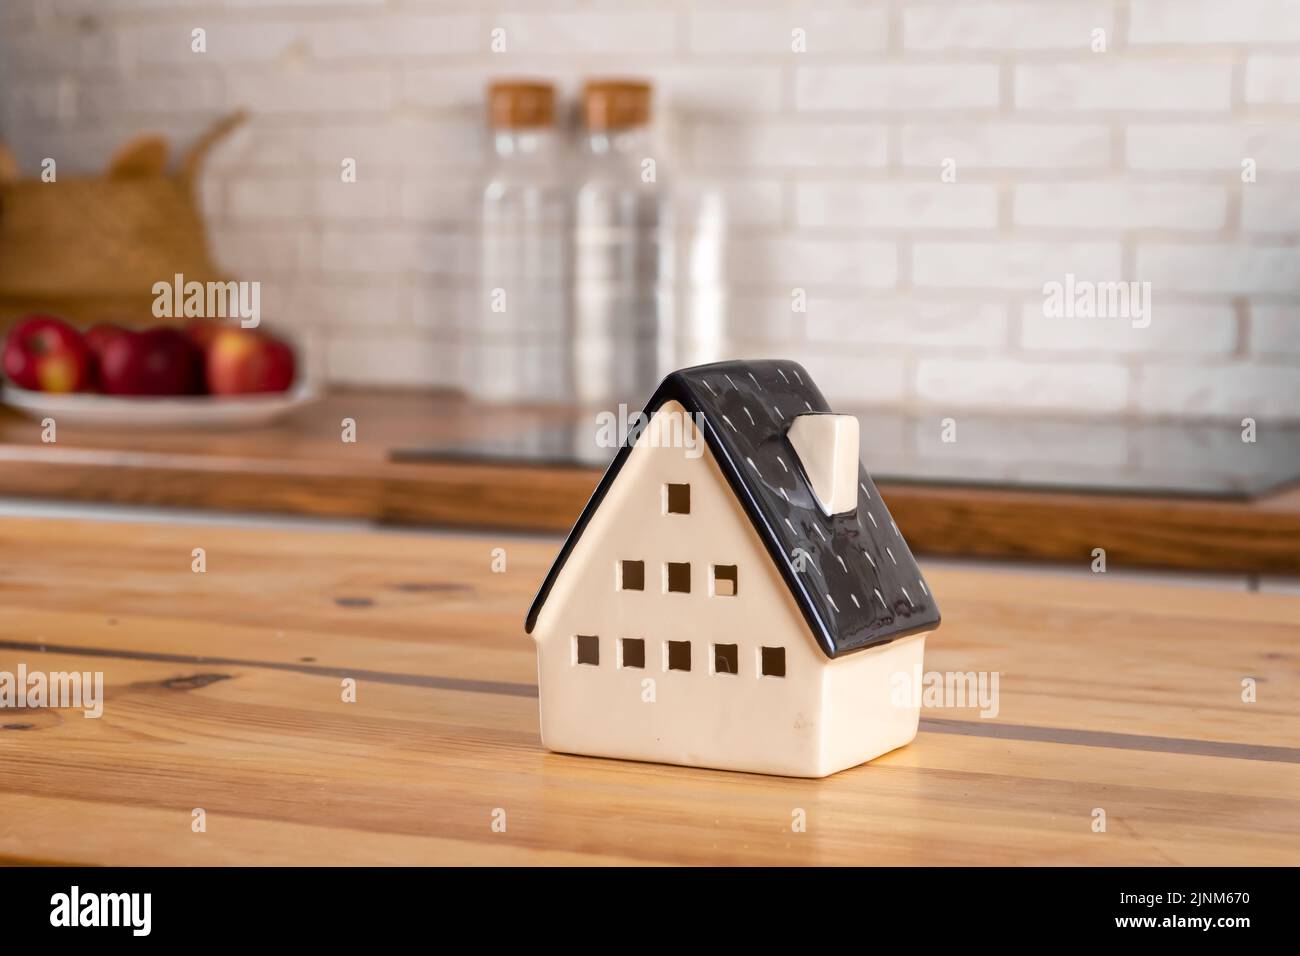 Un modèle de maison sur le fond de meubles de cuisine. Le concept de l'achat d'une maison, hypothèque immobilier, maison cuisine intérieur Banque D'Images